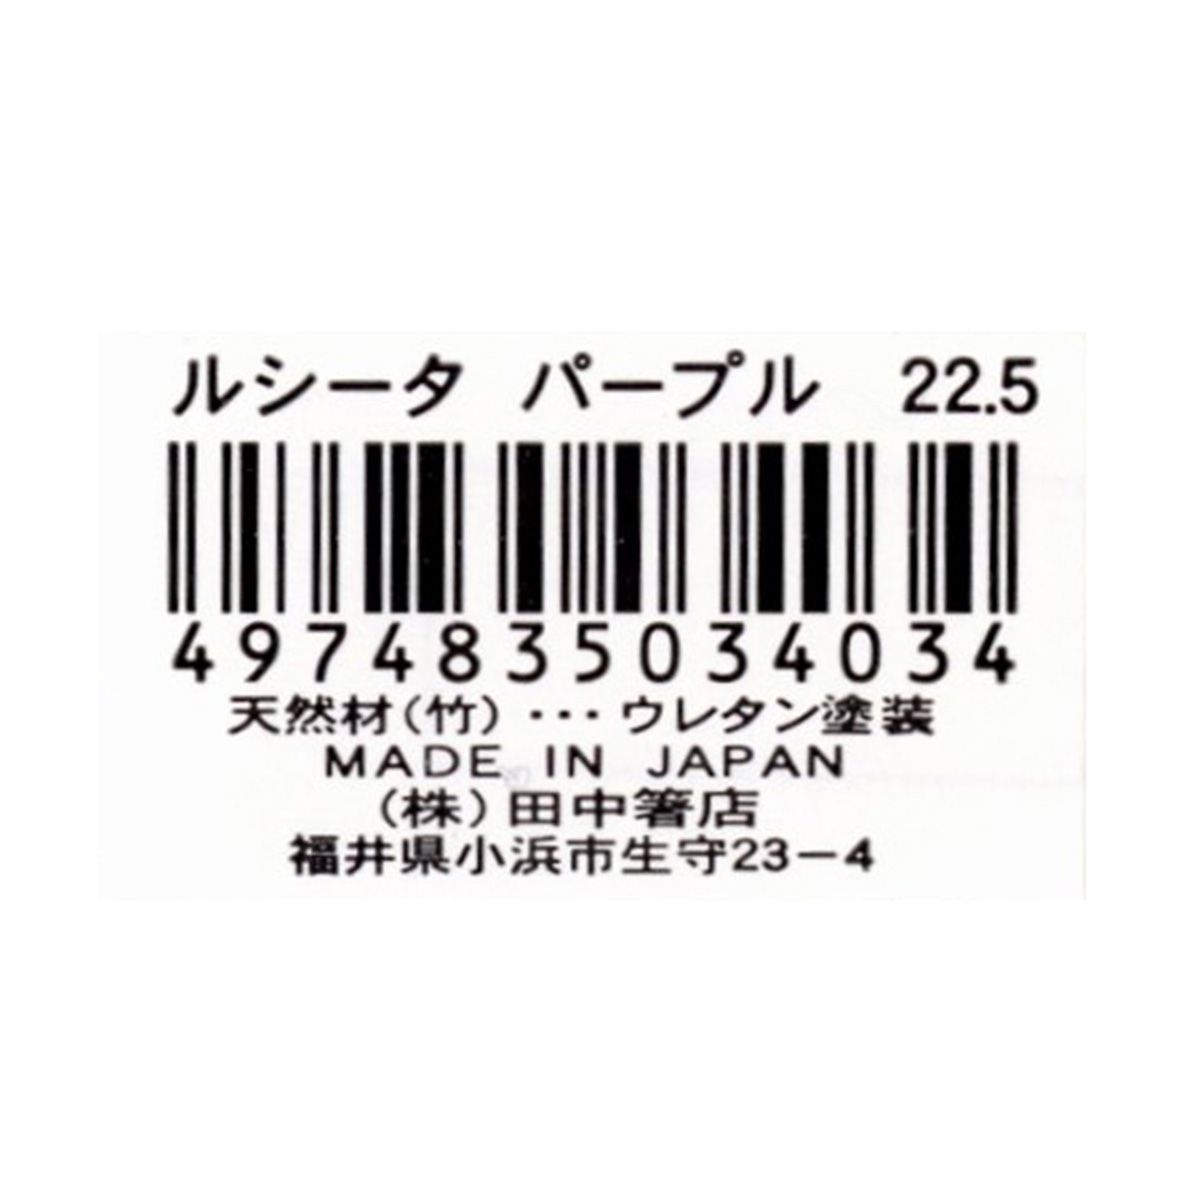 お箸 天然竹製  ルシータ箸 パープル 22.5cm 9001/345941